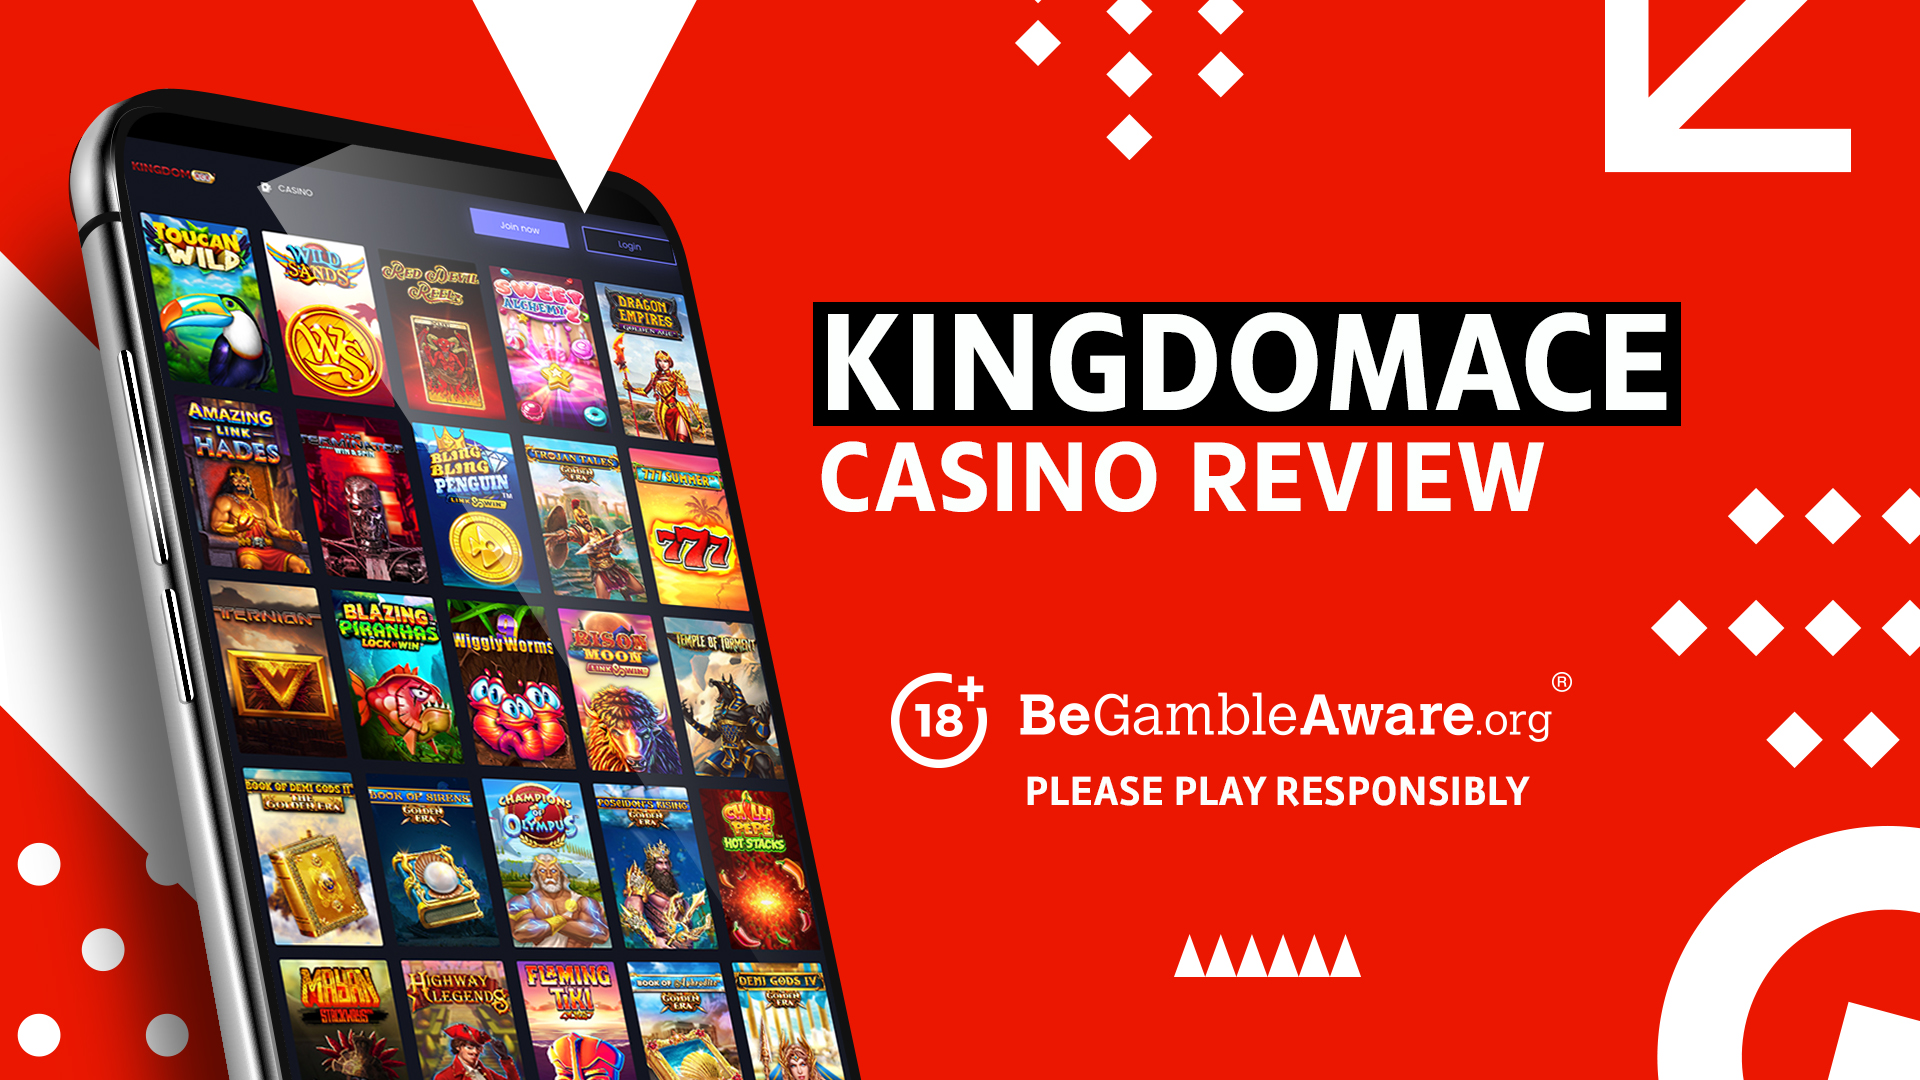 KingdomAce Casino-Rezension.  18+ BeGambleAware.org Bitte spielen Sie verantwortungsbewusst.